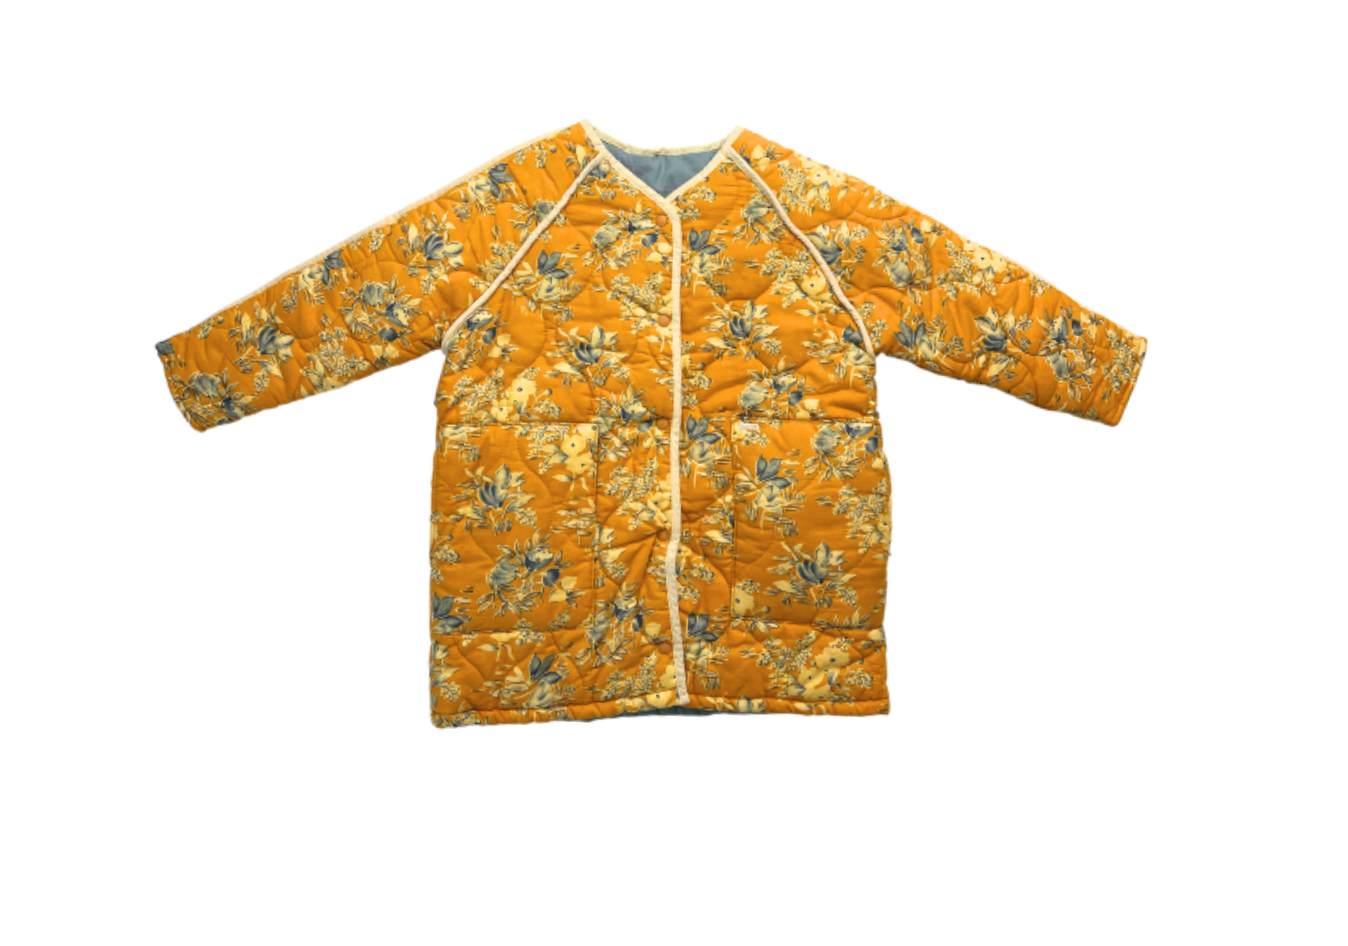 TAMBERE - Veste kimono matelassée jaune à fleurs (neuve) - 8 ans